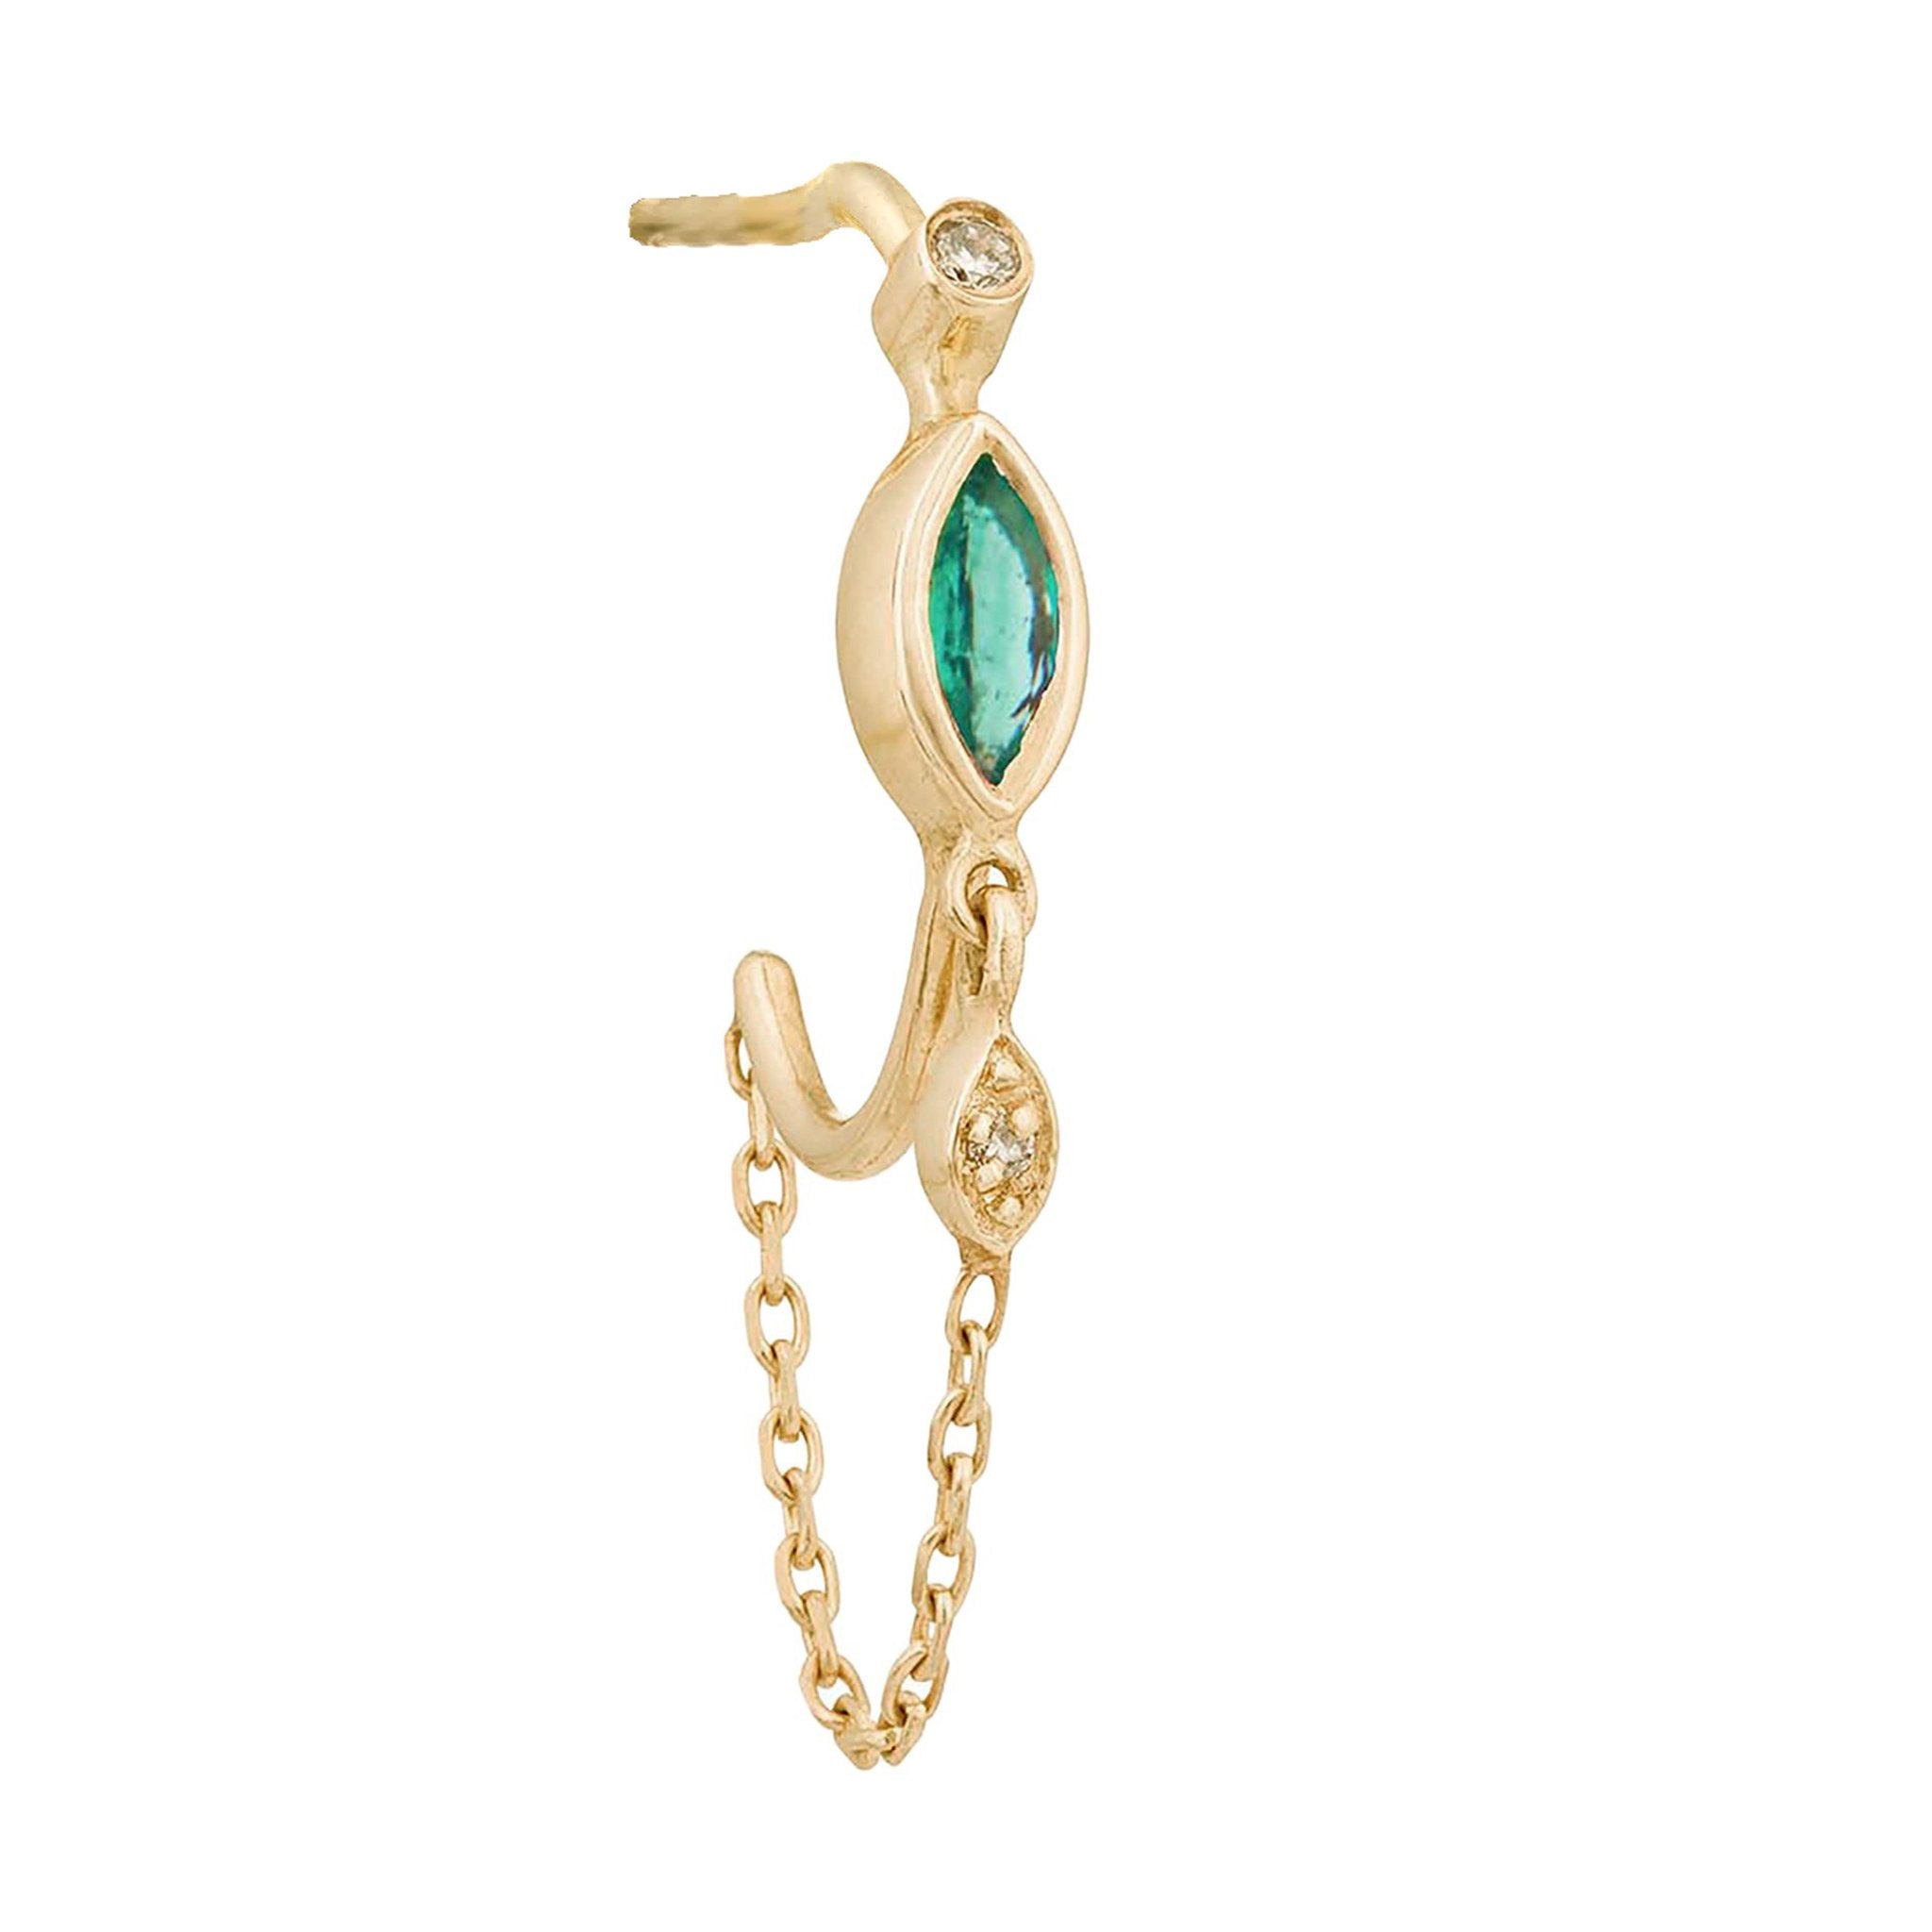 14K Gold Bezel-Set Marquise Emerald Hoop Earrings with Chain Drop - Peridot Fine Jewelry - Celine Daoust